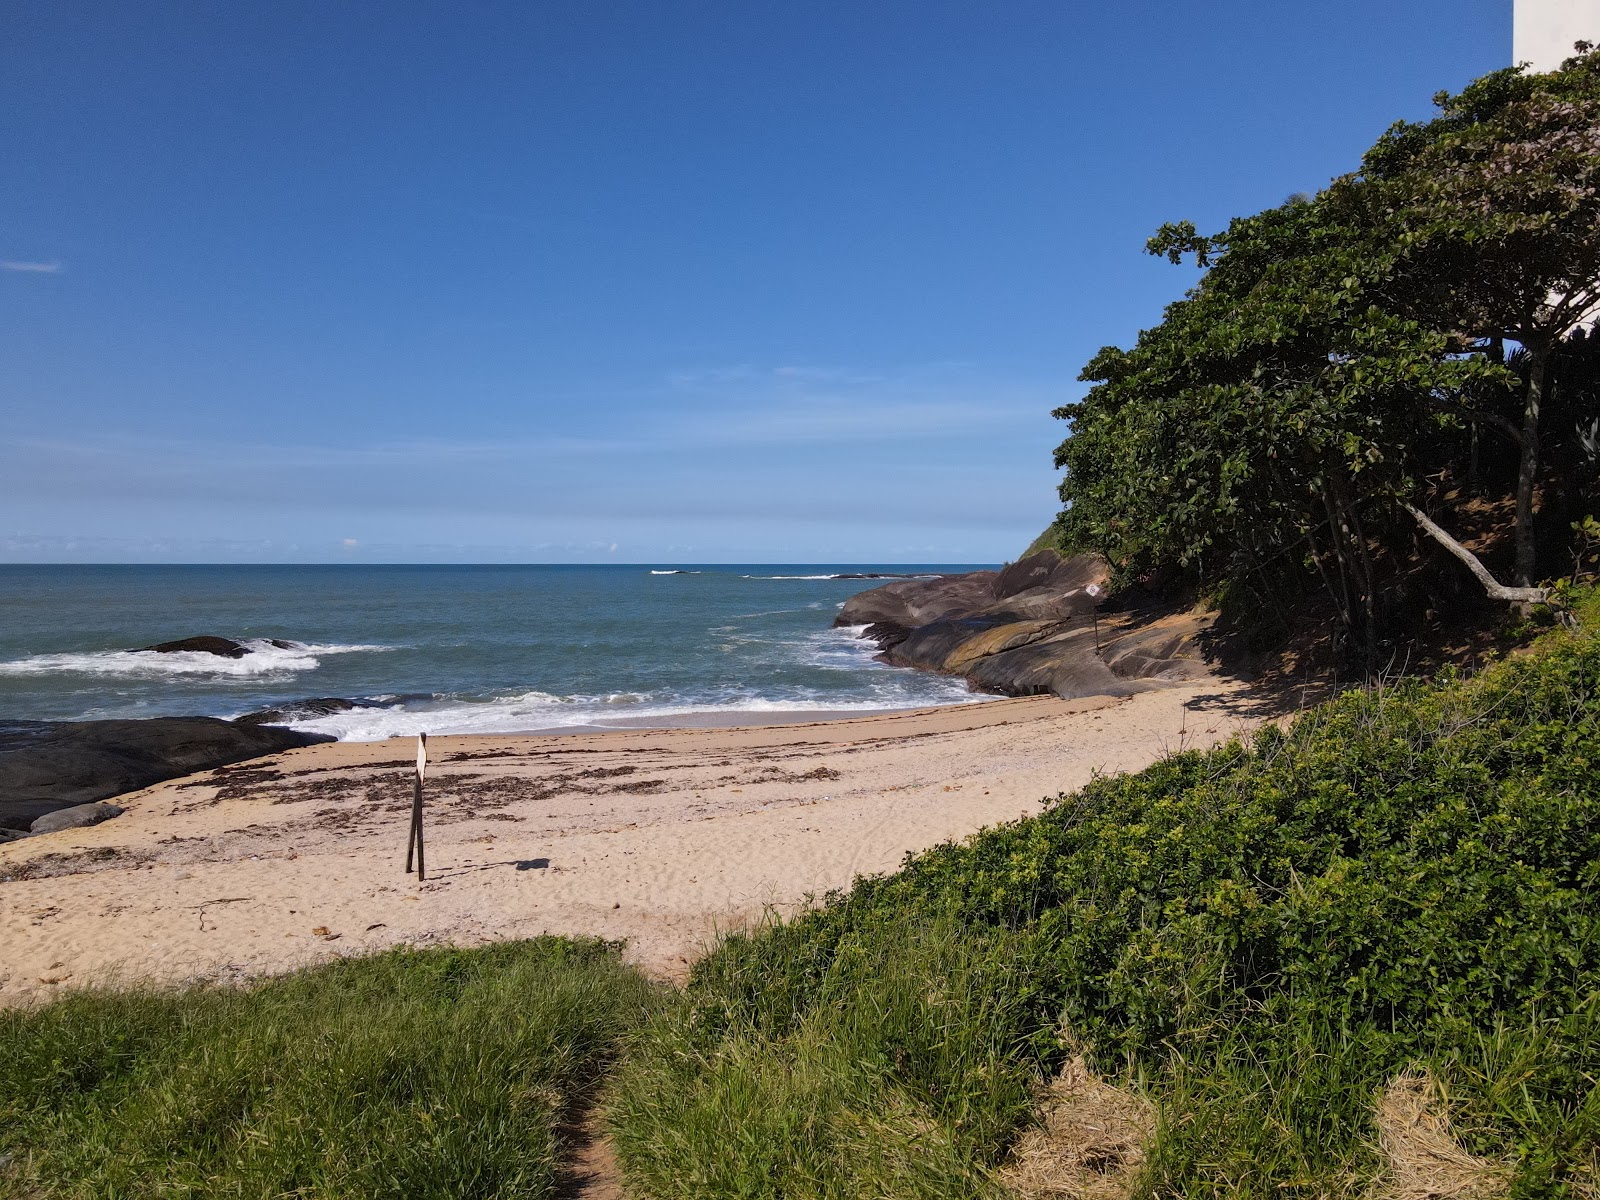 Foto de Praia do Forte Tamandare Pernambuco com areia brilhante superfície